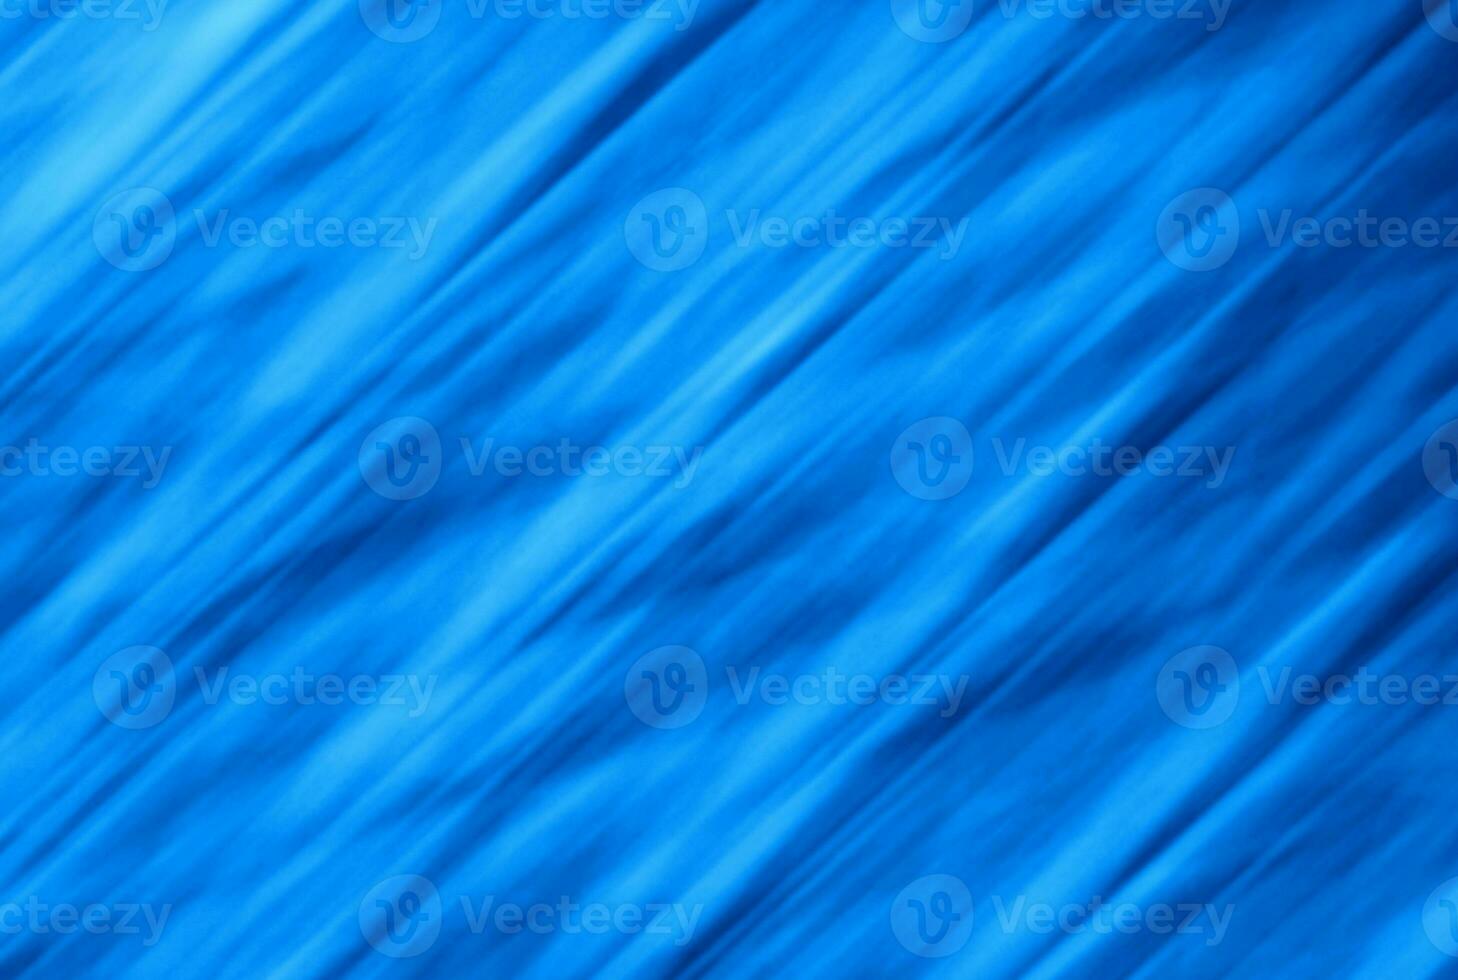 azul tecido textura ondulado listrado têxtil fundo arte papel de parede foto